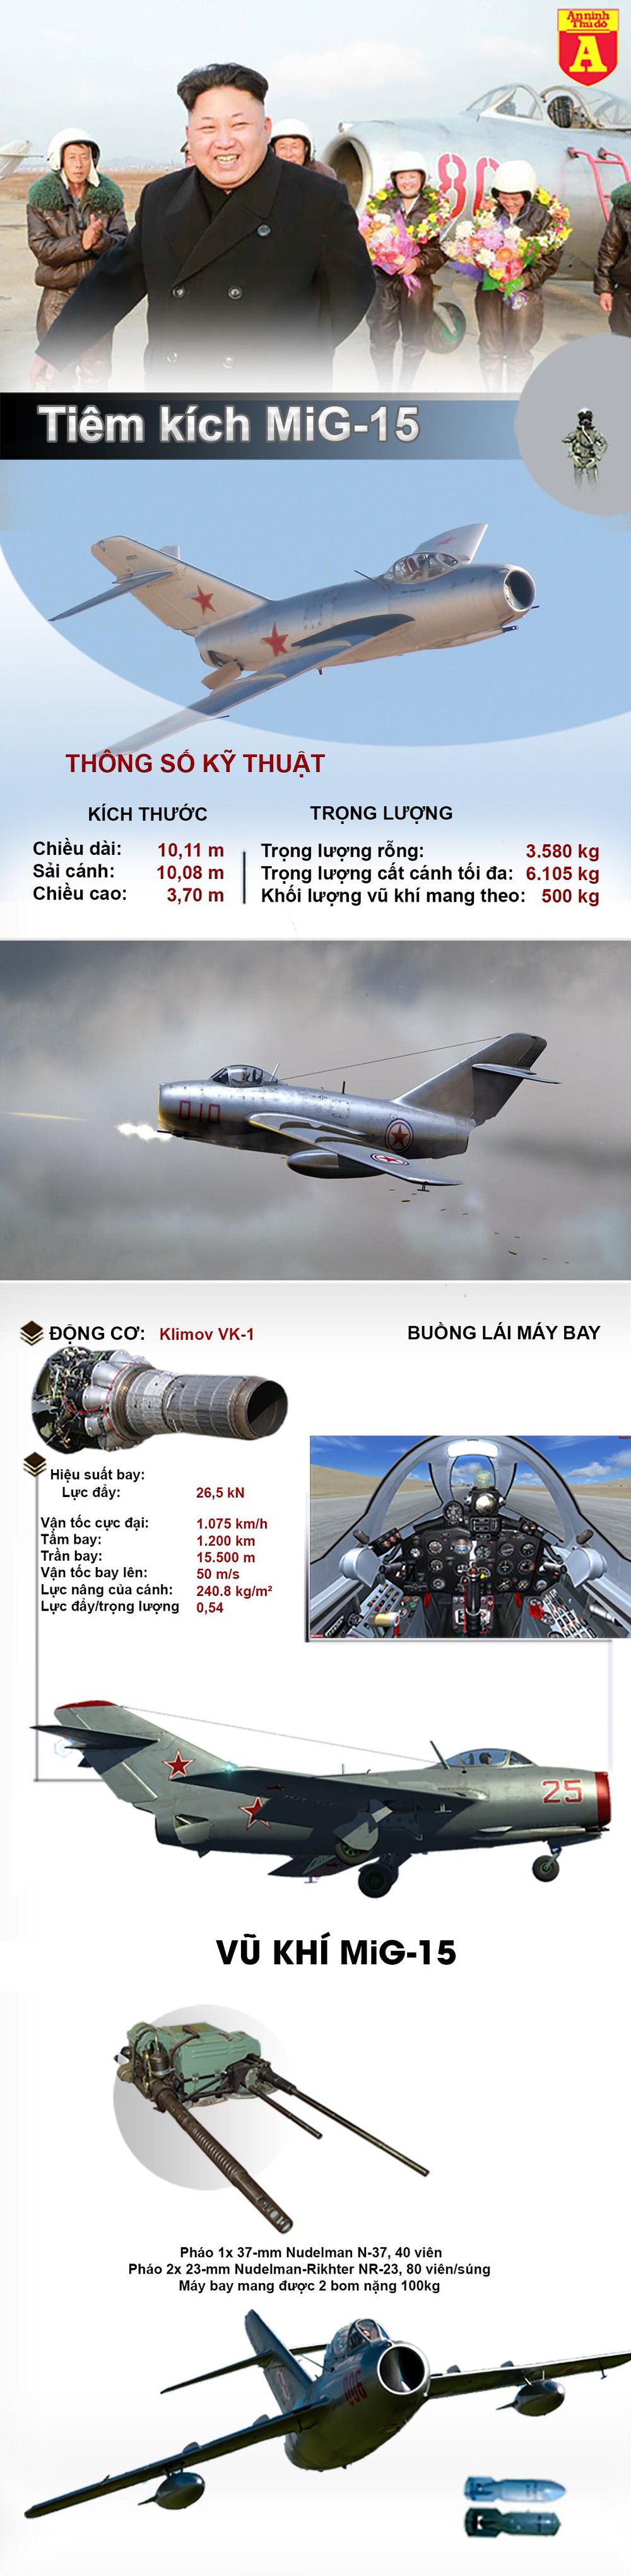 [Infographics] Bất ngờ phi đội 34 chiếc MiG-15 của Triều Tiên vẫn đang hoạt động sau 70 năm ra đời - Ảnh 1